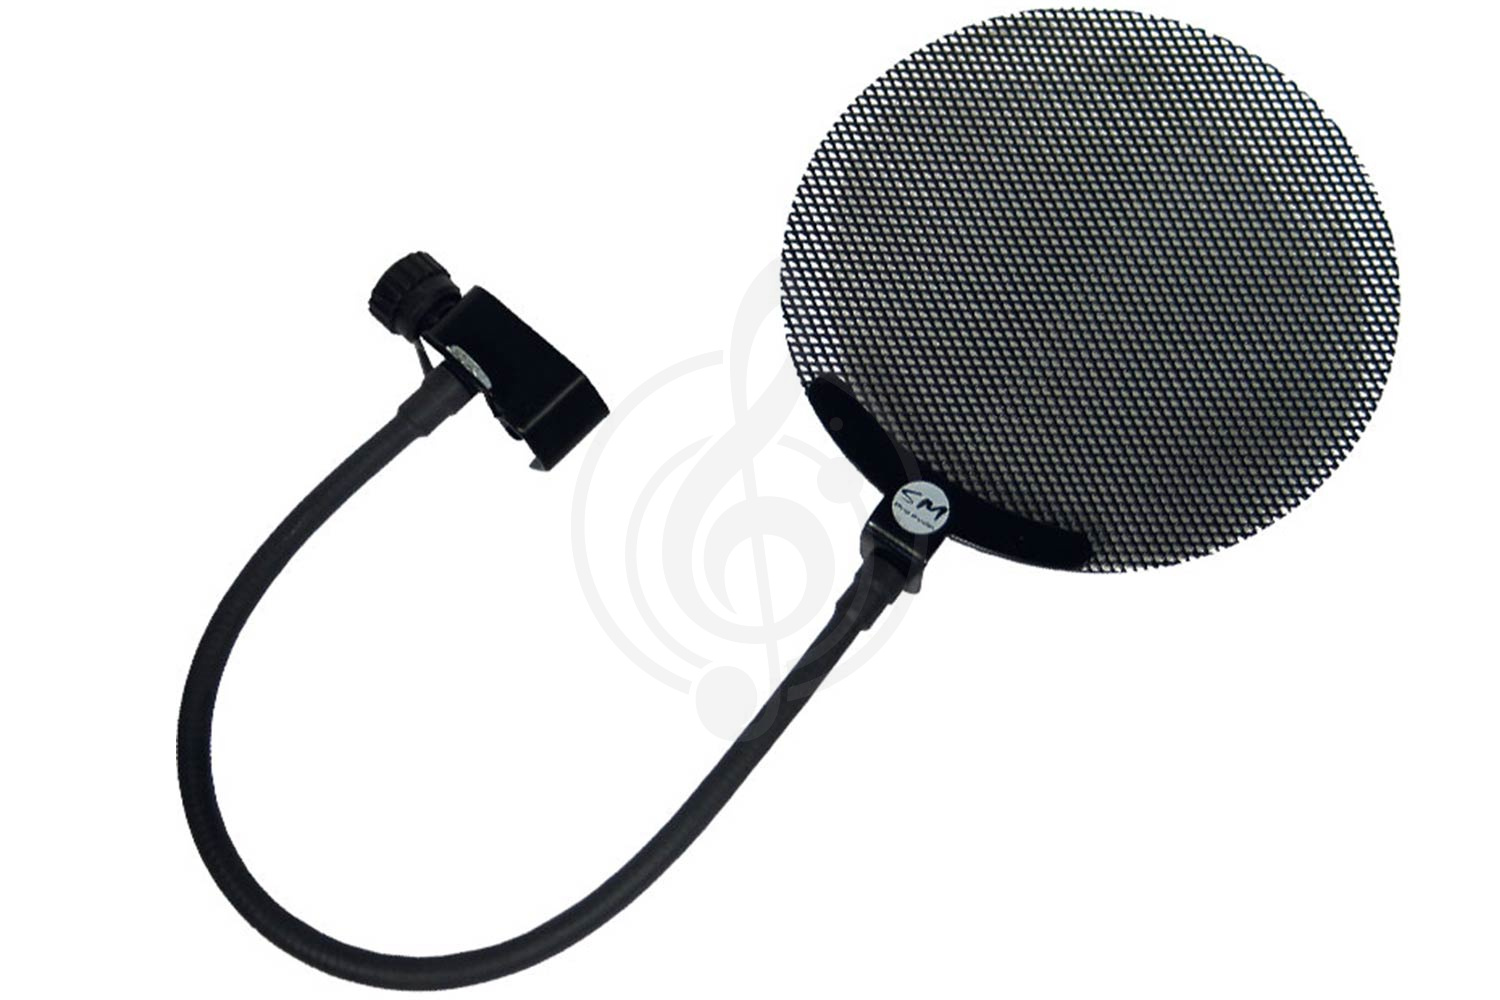 Поп-фильтр Поп-фильтры SM Pro Audio SM PRO AUDIO PS1 - профессиональный поп-фильтр для микрофона PS1 - фото 1